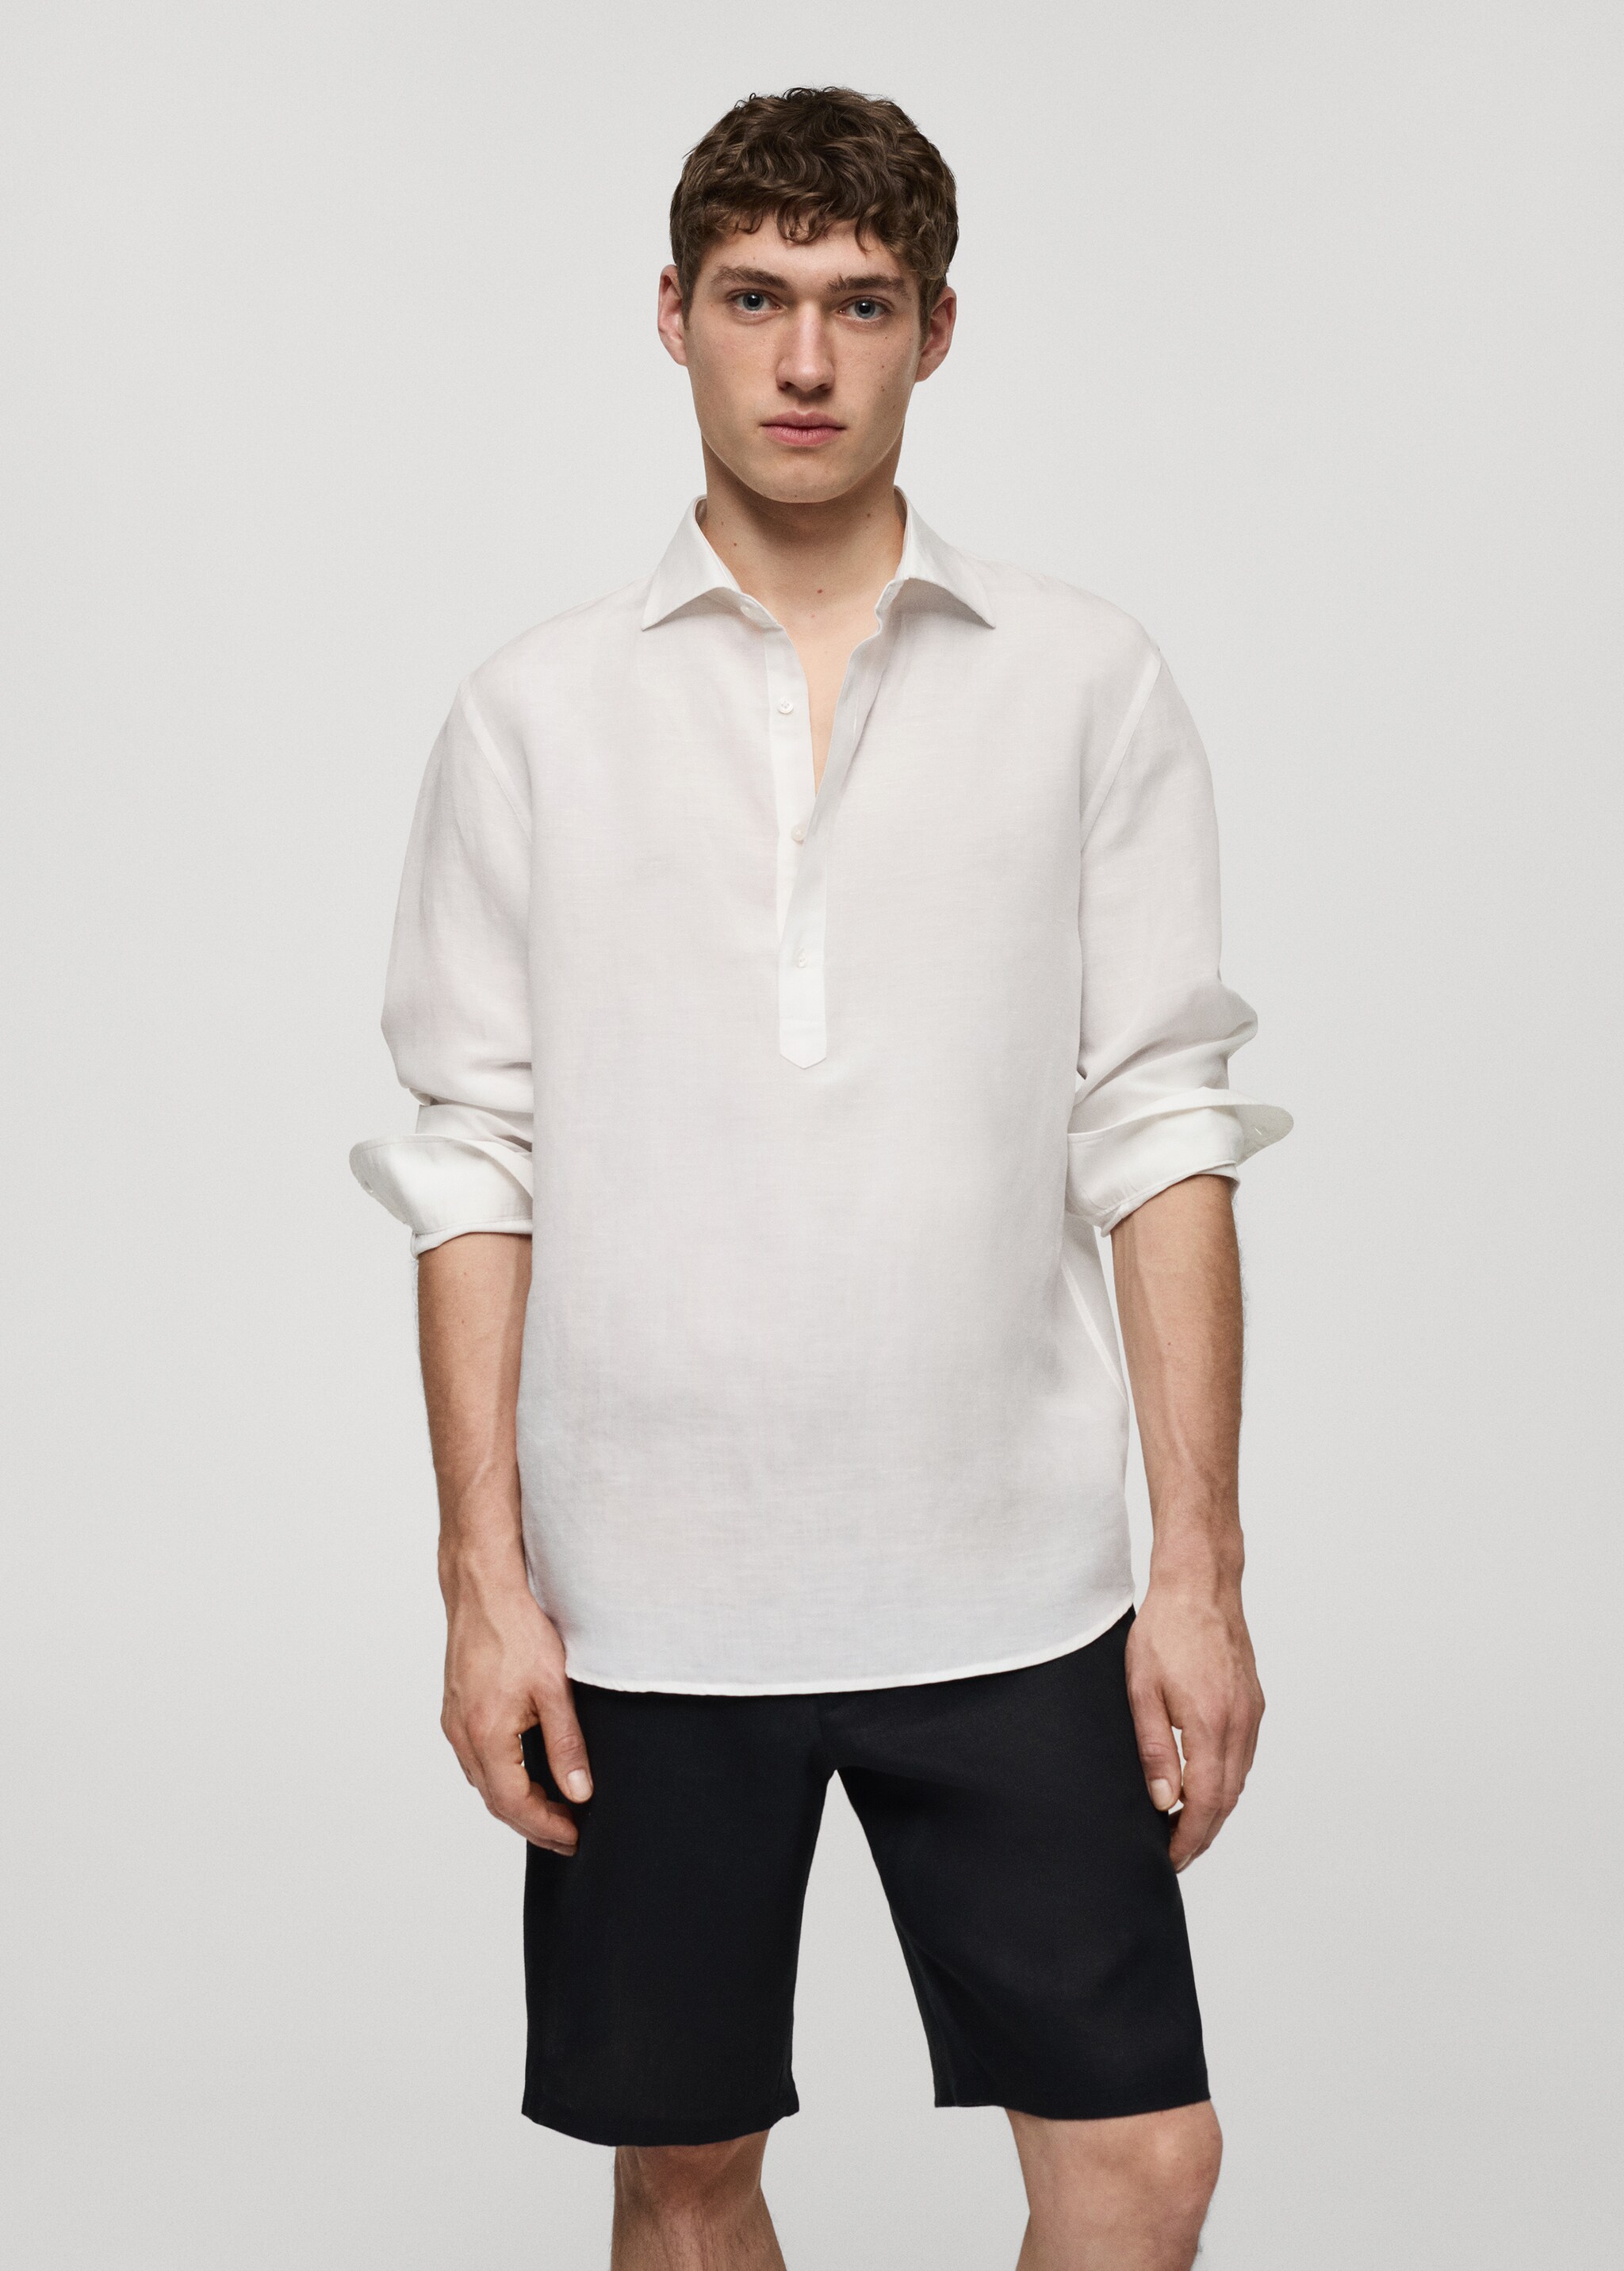 Relaxed-fit linen shirt - Medium plane